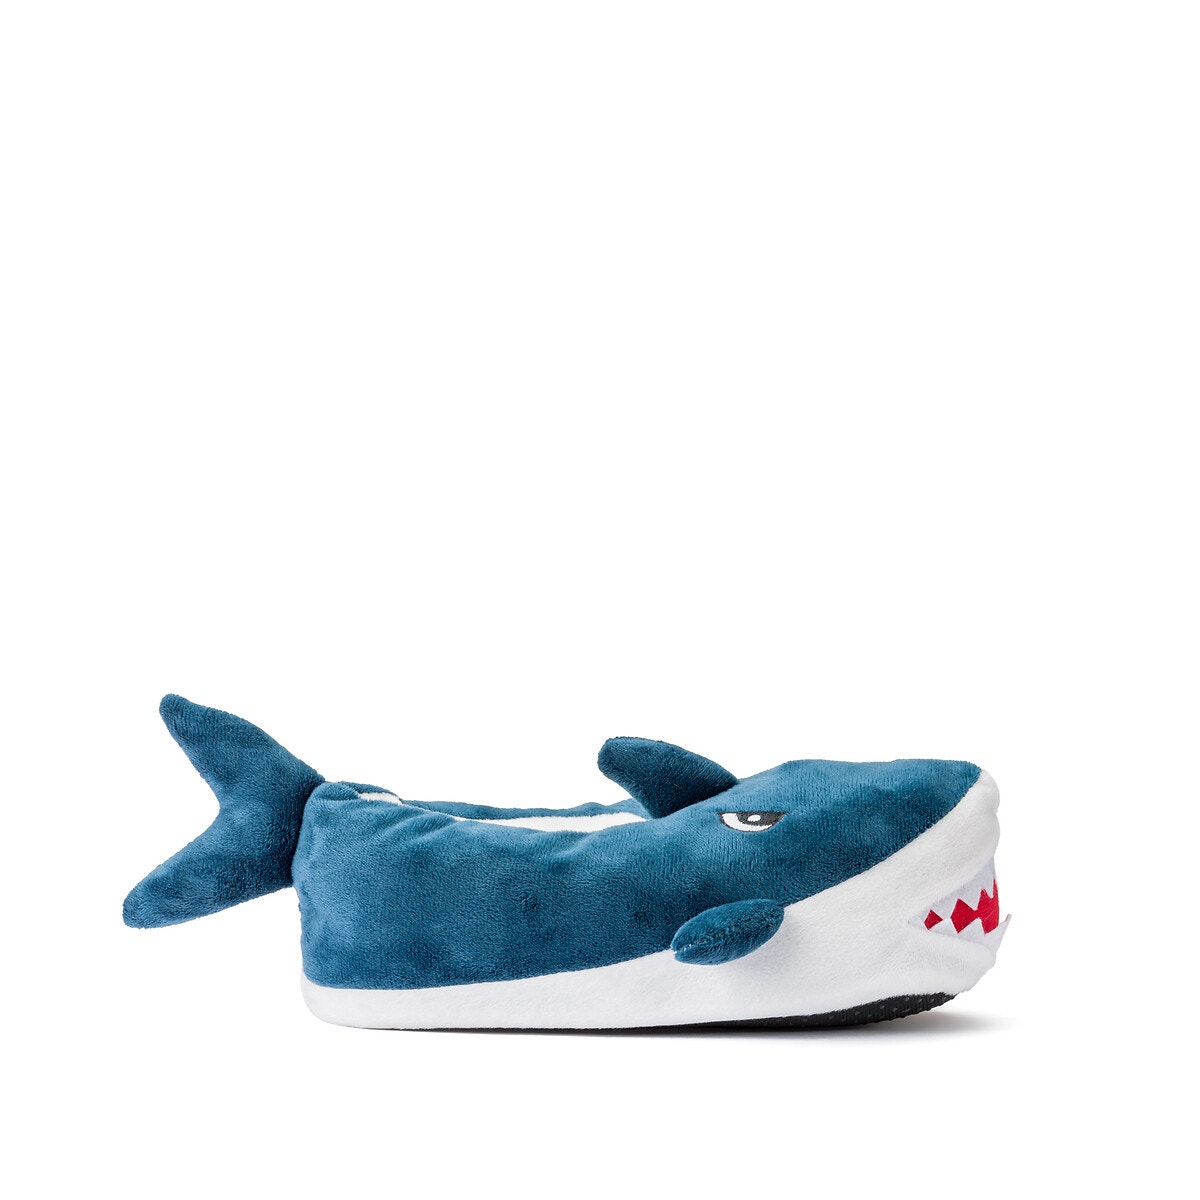 STAGING | ΠΑΙΔΙ | Παπούτσια | Παντόφλες Παντοφλάκια σε σχήμα καρχαρία, 28 29-34 35